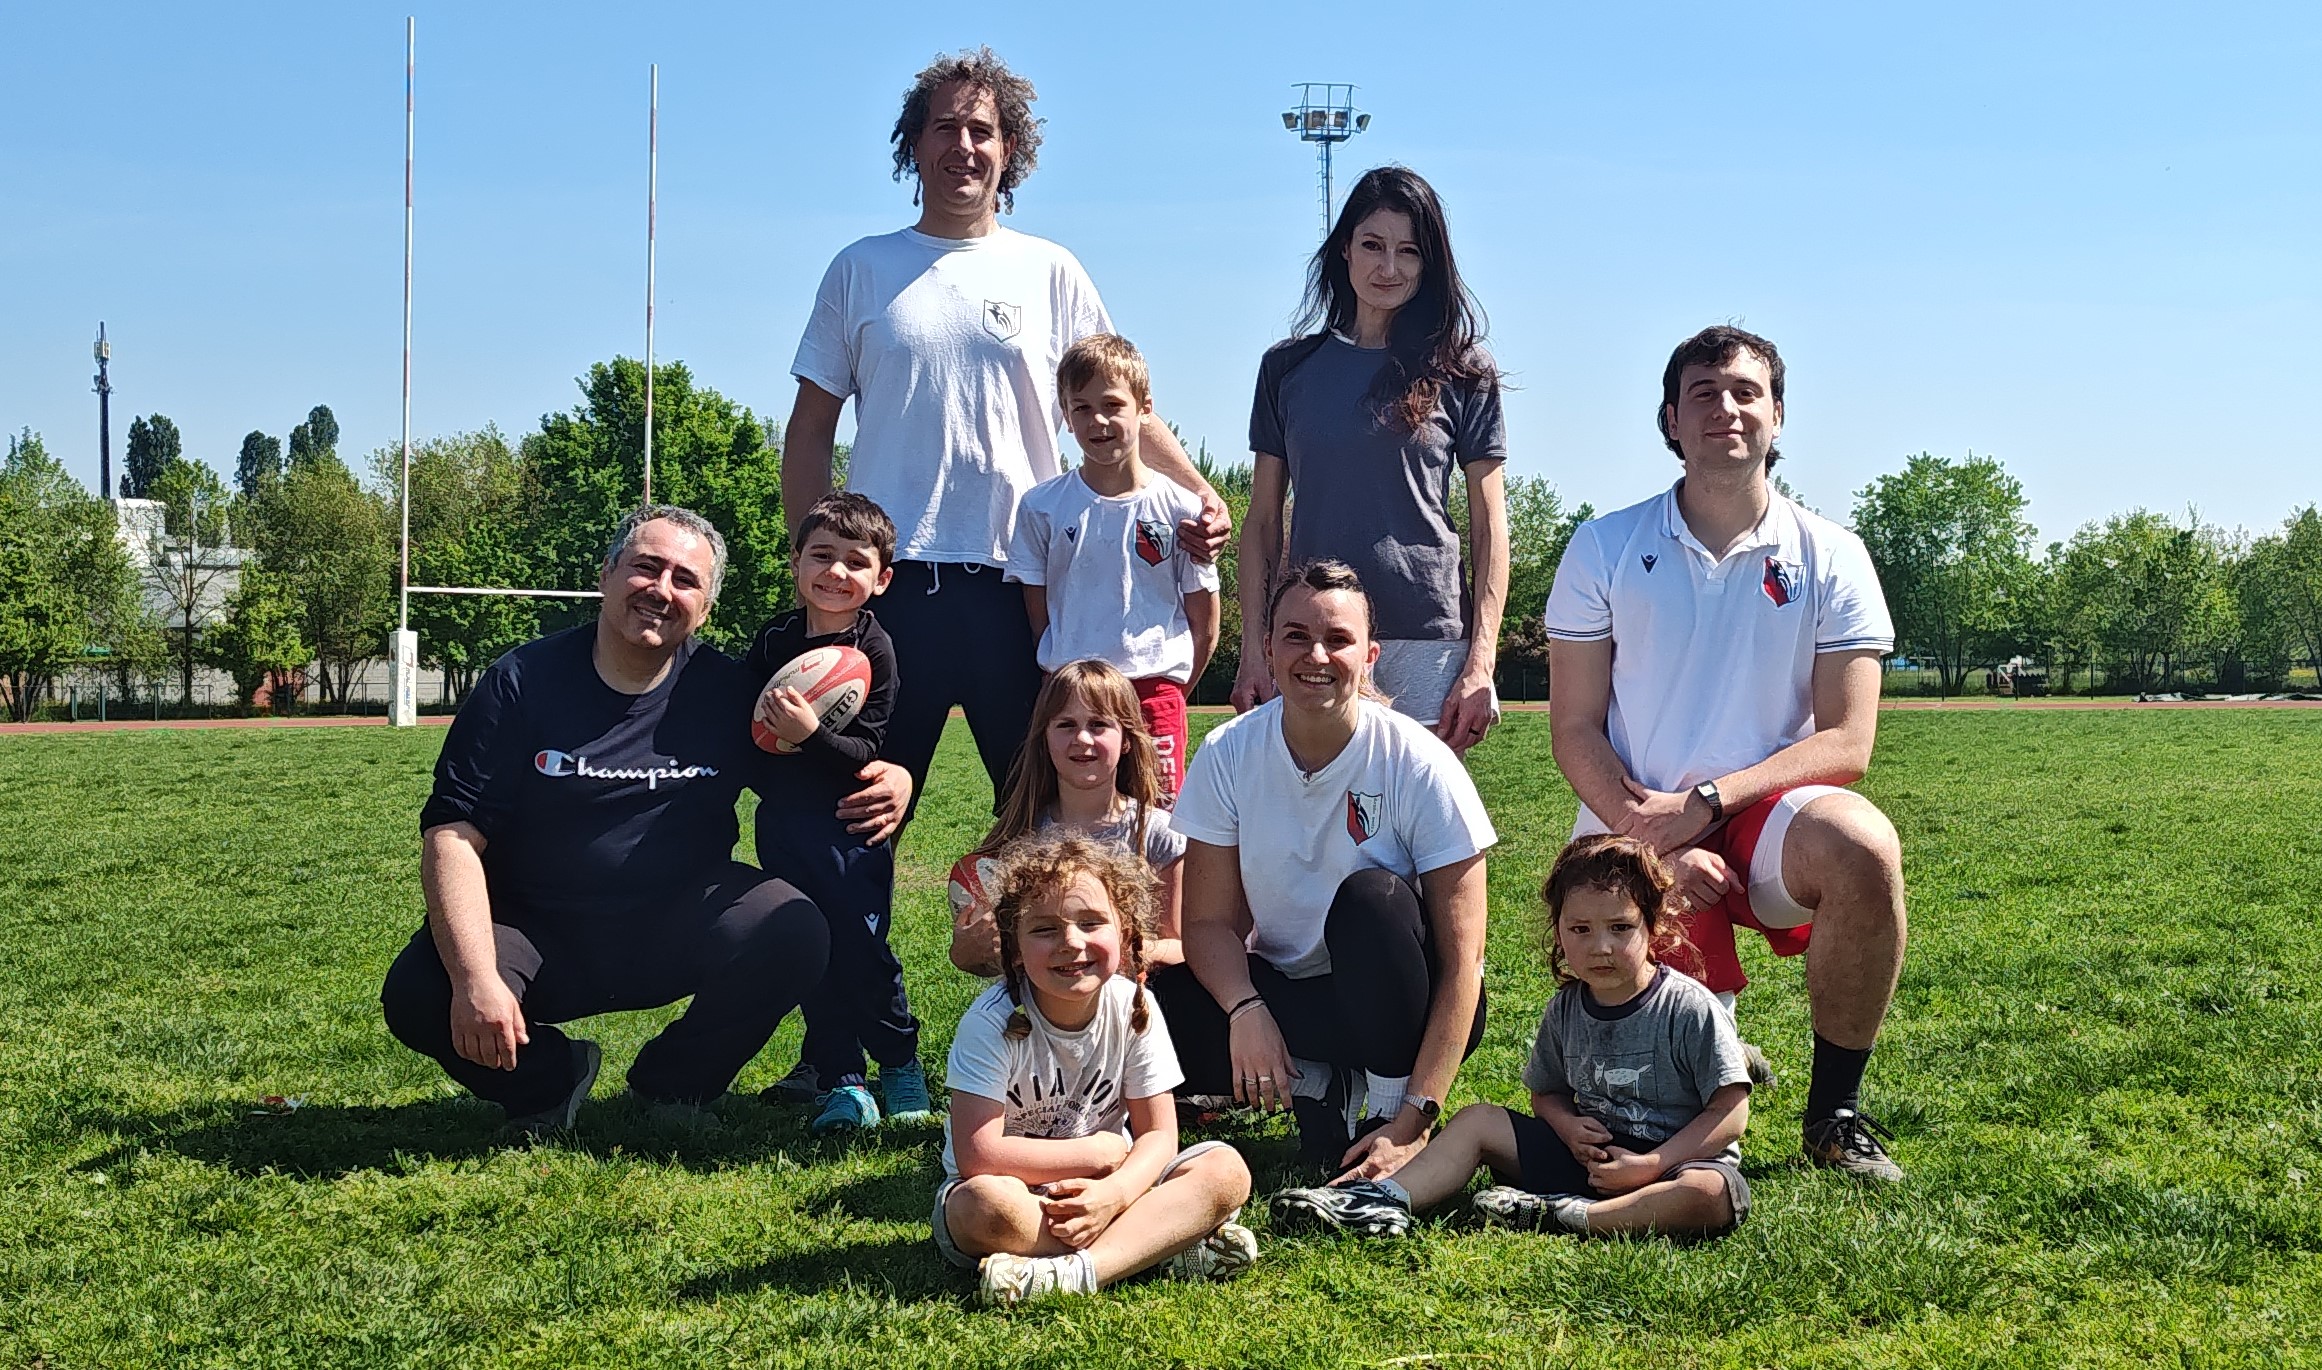 “Rugbycità con mamma e papà”, progetto di Rugby Carpi per le famiglie